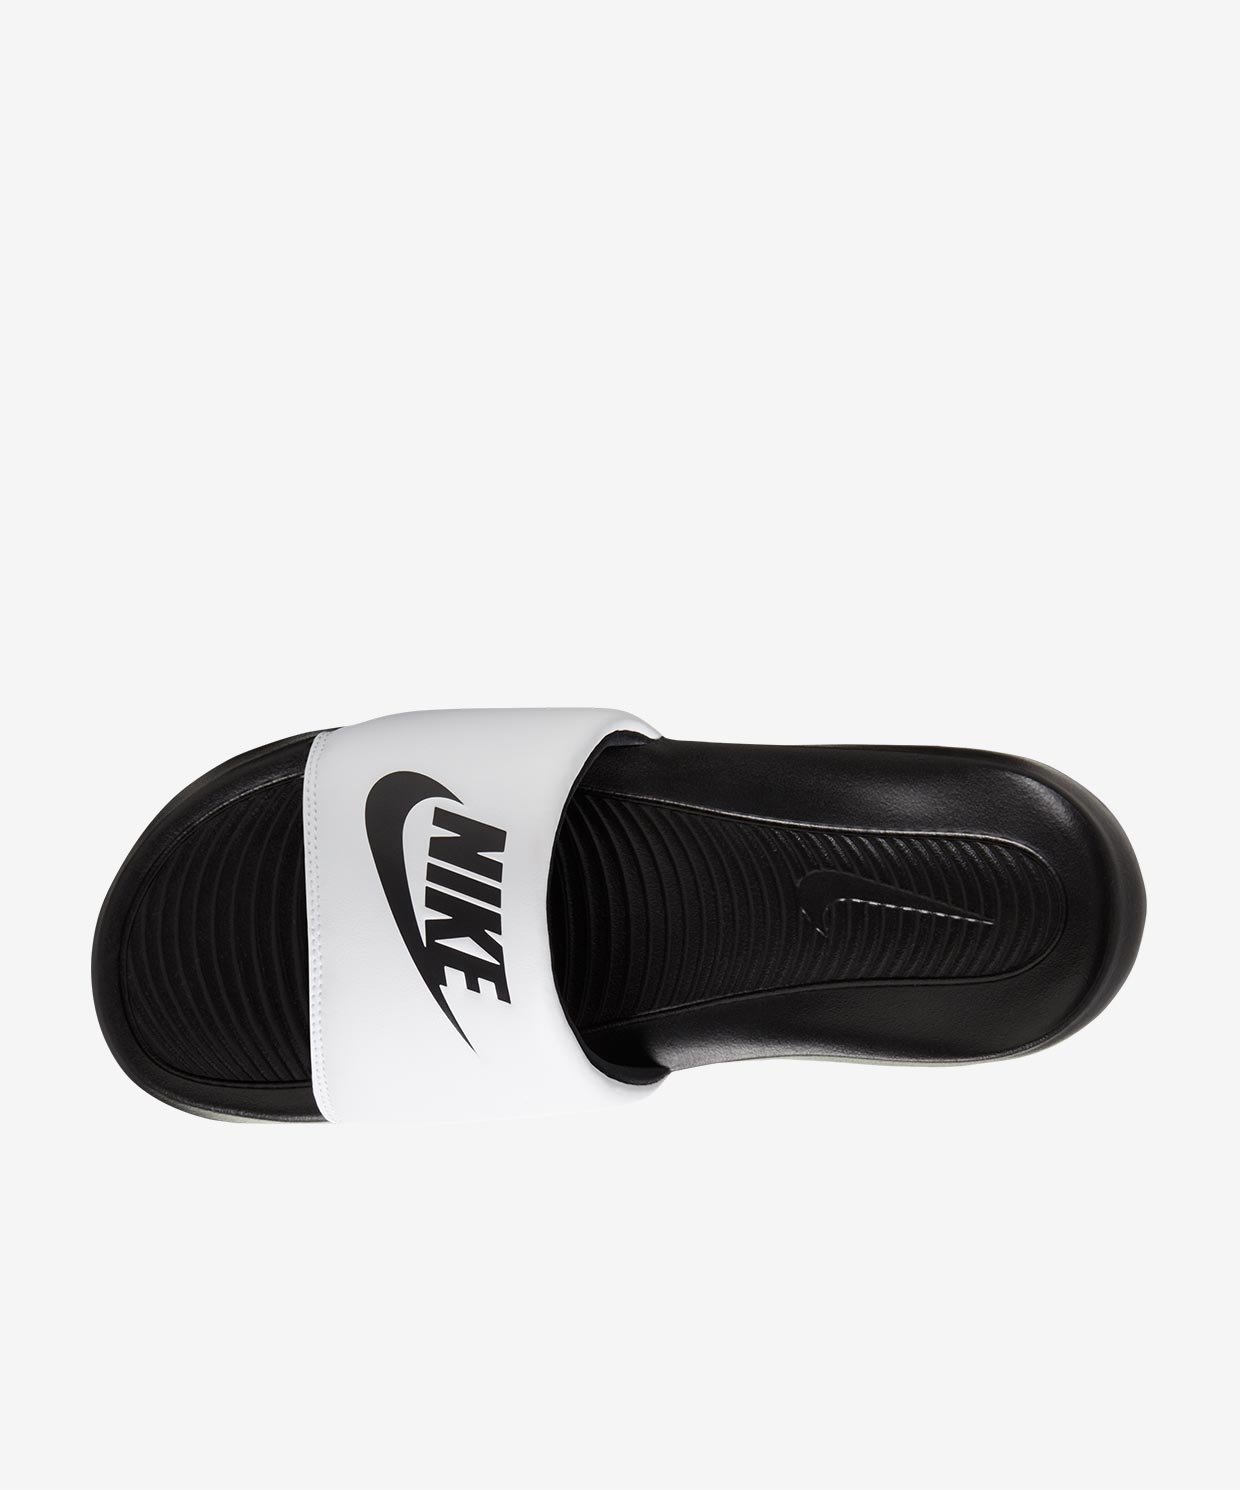 Nike Victori One Slide